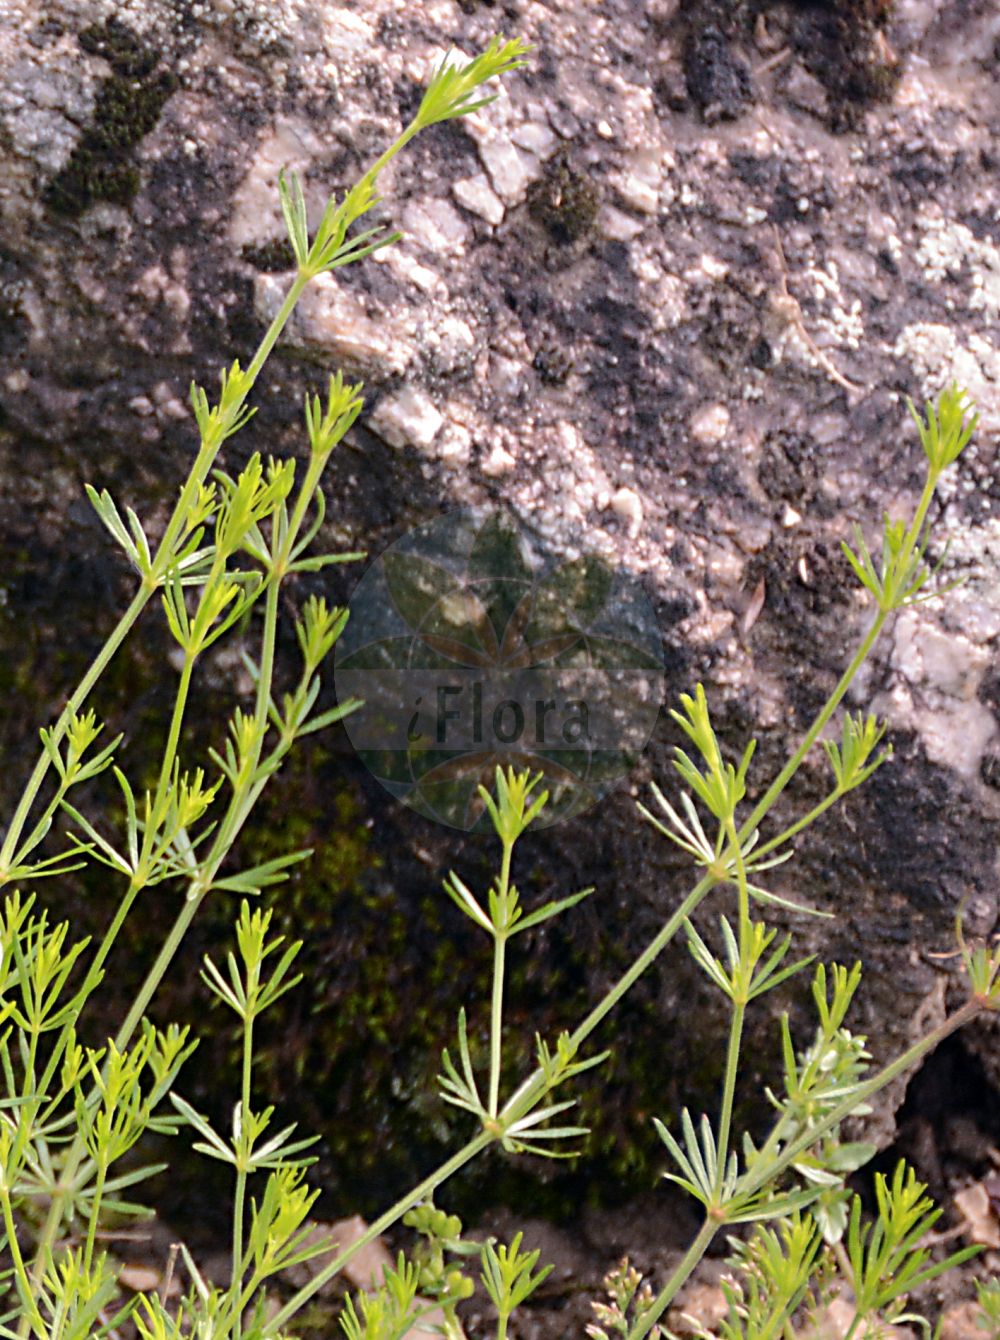 Foto von Galium aristatum (Grannen-Labkraut - Awned Bedstraw). Das Foto wurde in Linz, Oberösterreich, Österreich aufgenommen. ---- Photo of Galium aristatum (Grannen-Labkraut - Awned Bedstraw). The picture was taken in Linz, Upper Austria, Austria.(Galium aristatum,Grannen-Labkraut,Awned Bedstraw,Galium aristatum,Galium aristatum L. subsp.,Galium sylvaticum subsp. aristatum,Grannen-Labkraut,Awned Bedstraw,Galium,Labkraut,Bedstraw,Rubiaceae,Rötegewächse,Bedstraw family)